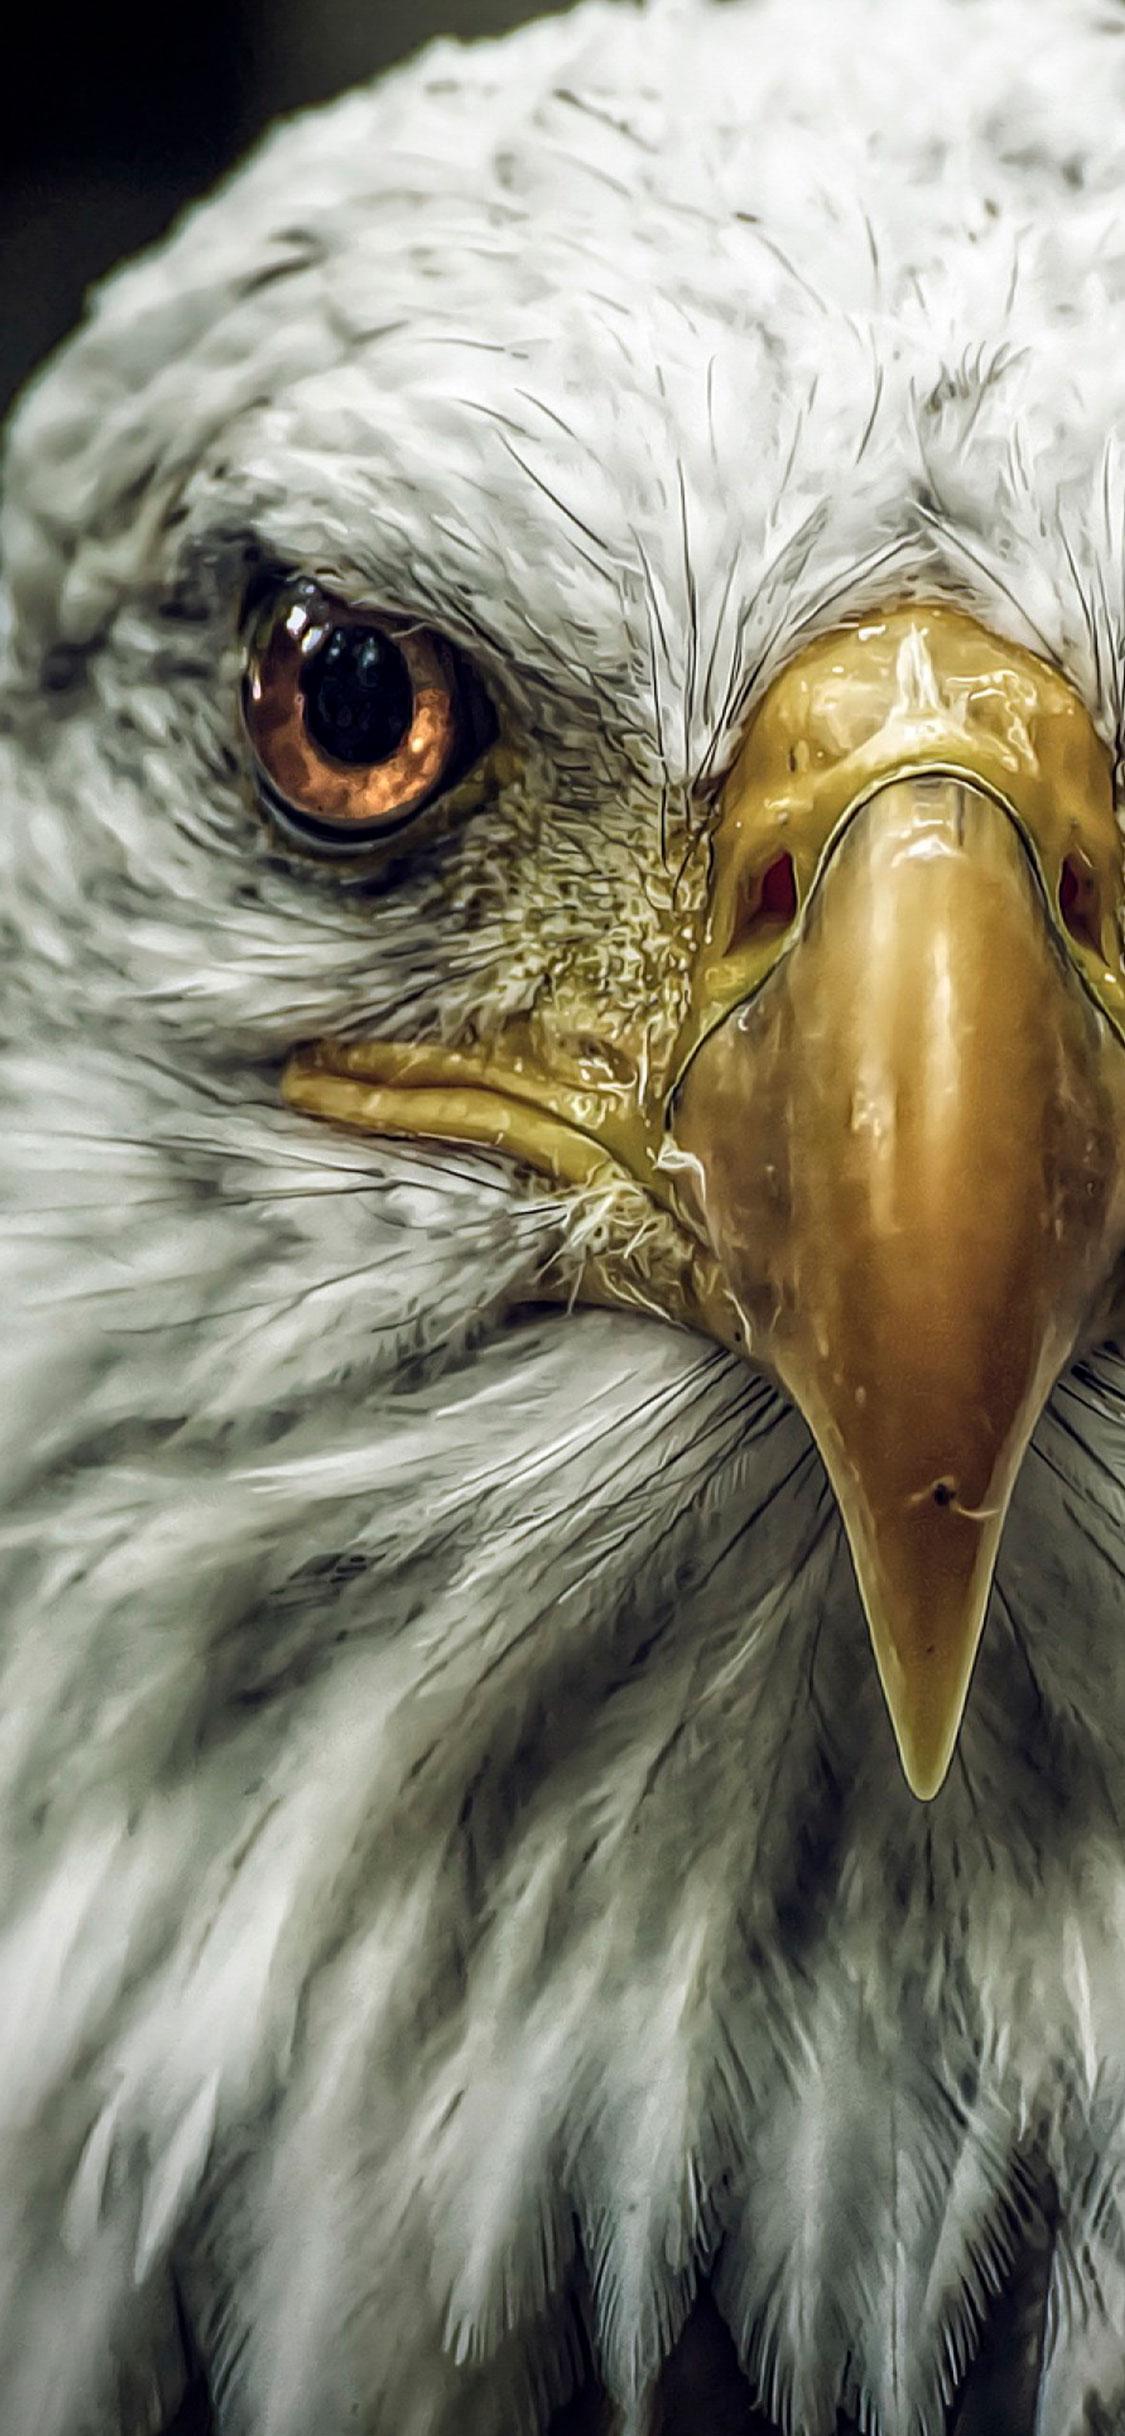 eagle eye meaning